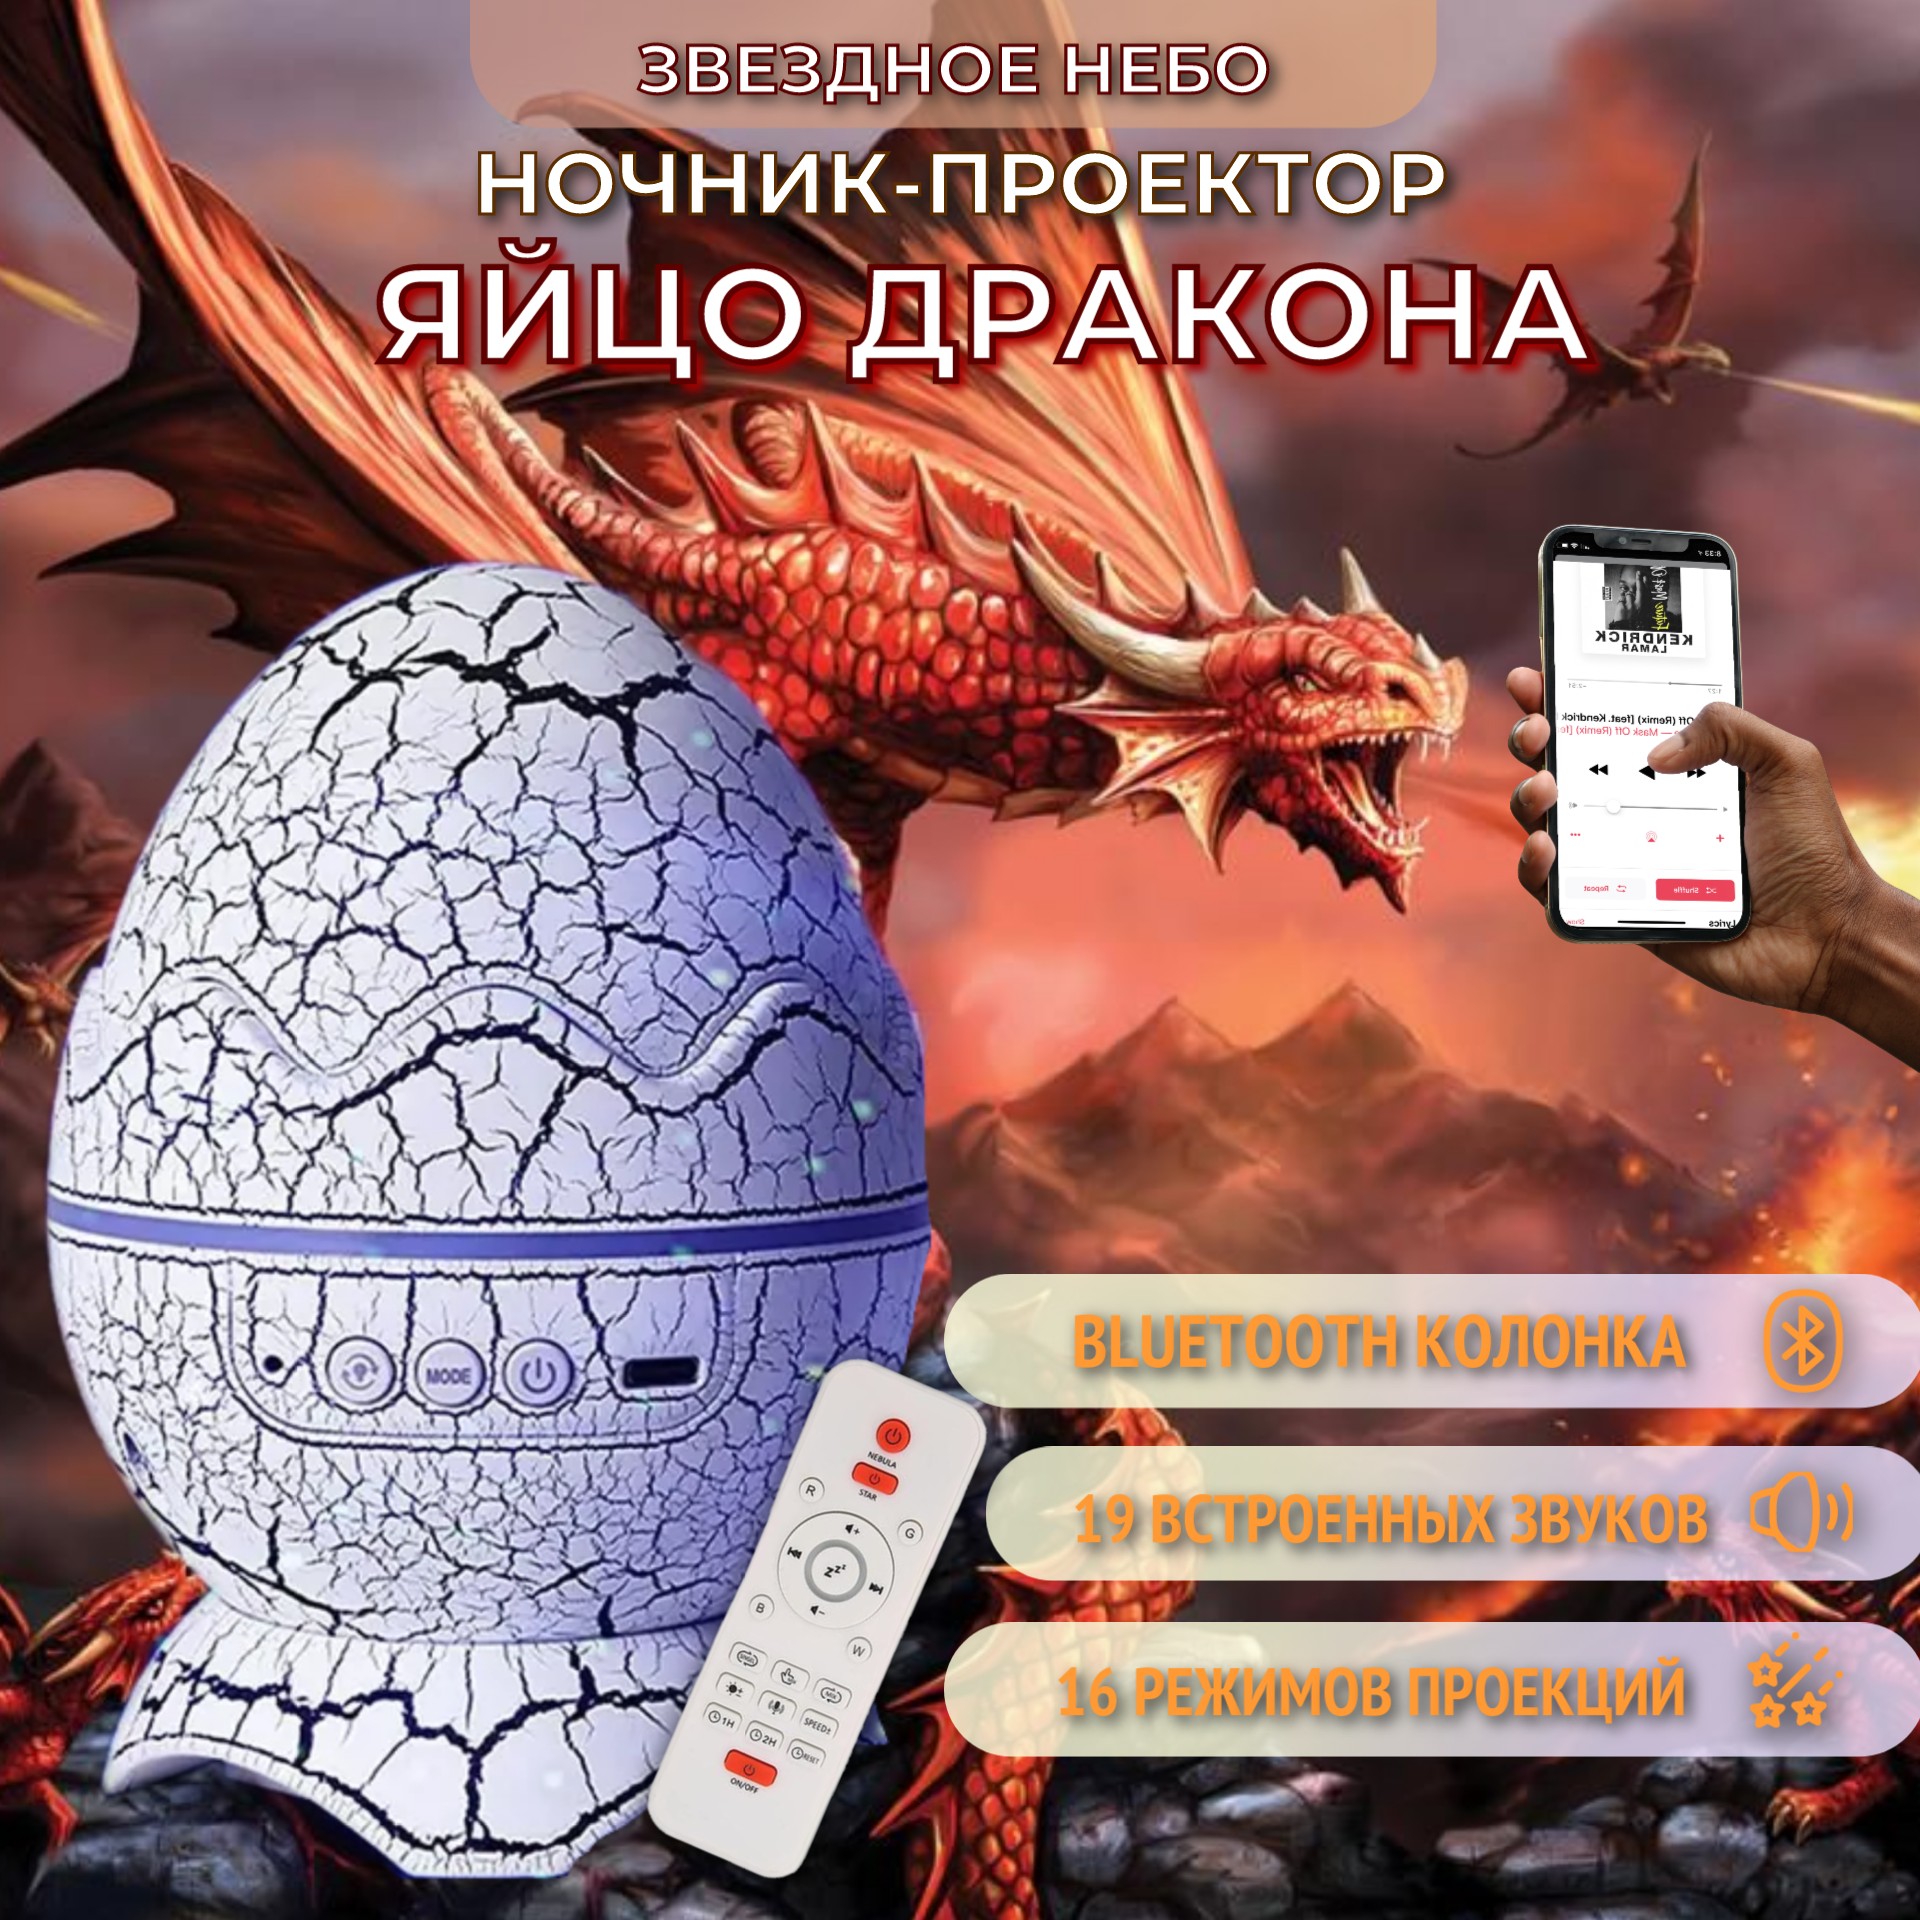 Ночник-проектор Торговая федерация Яйцо дракона Bluetooth, белый, 3кн ночник проектор яйцо дракона с bluetooth белый 4кн supernowa